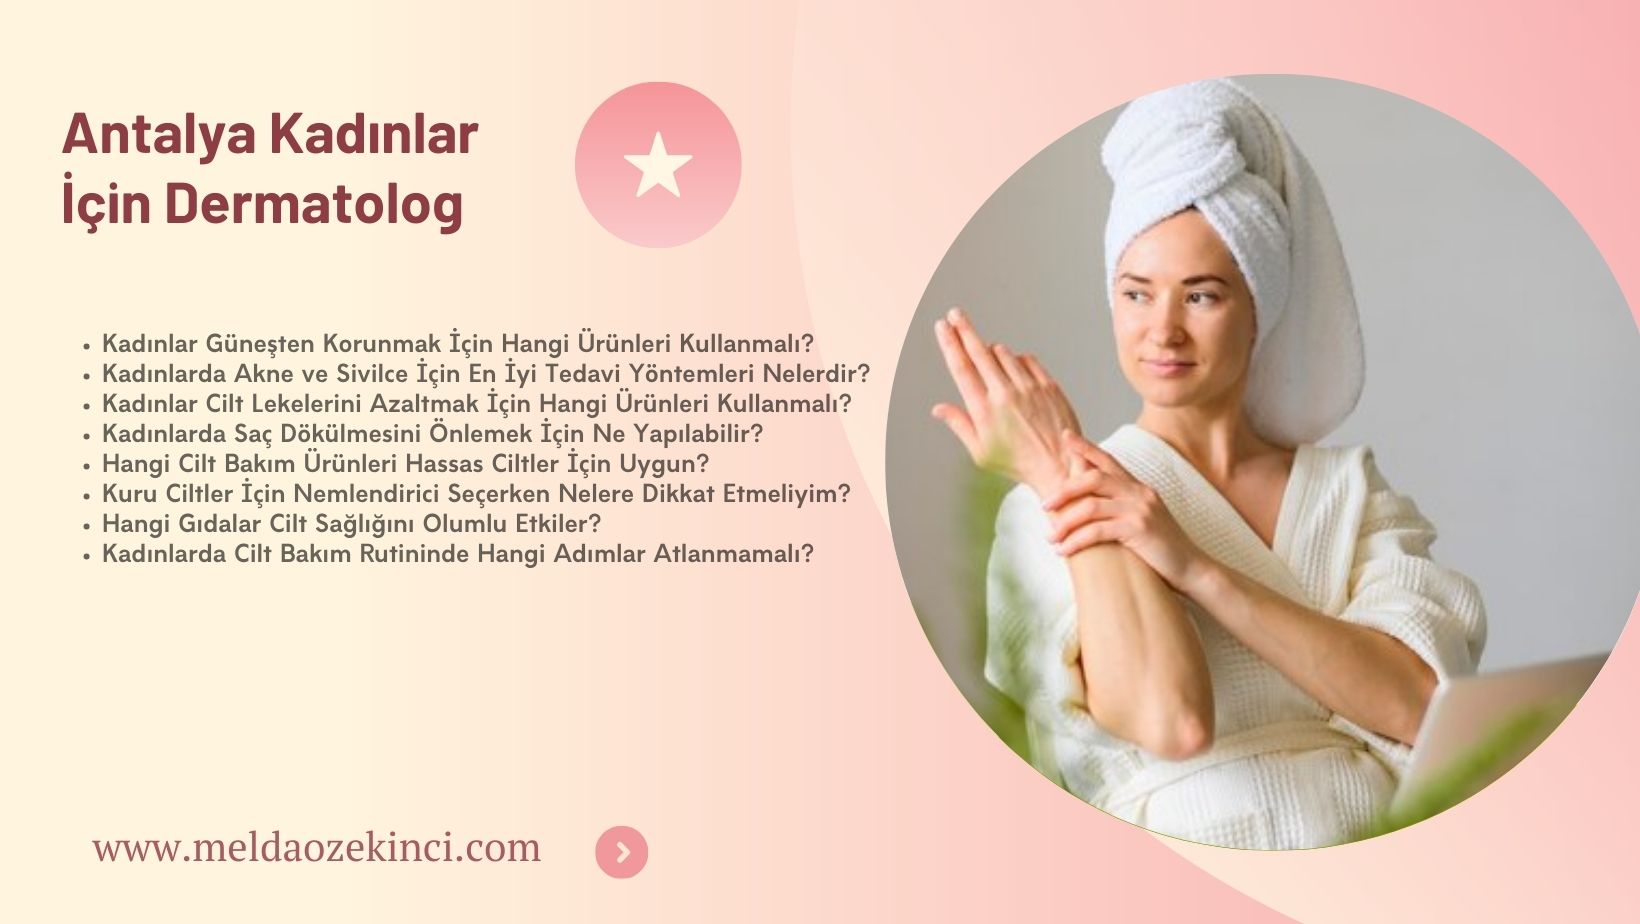 Antalya Kadınlar İçin Dermatolog